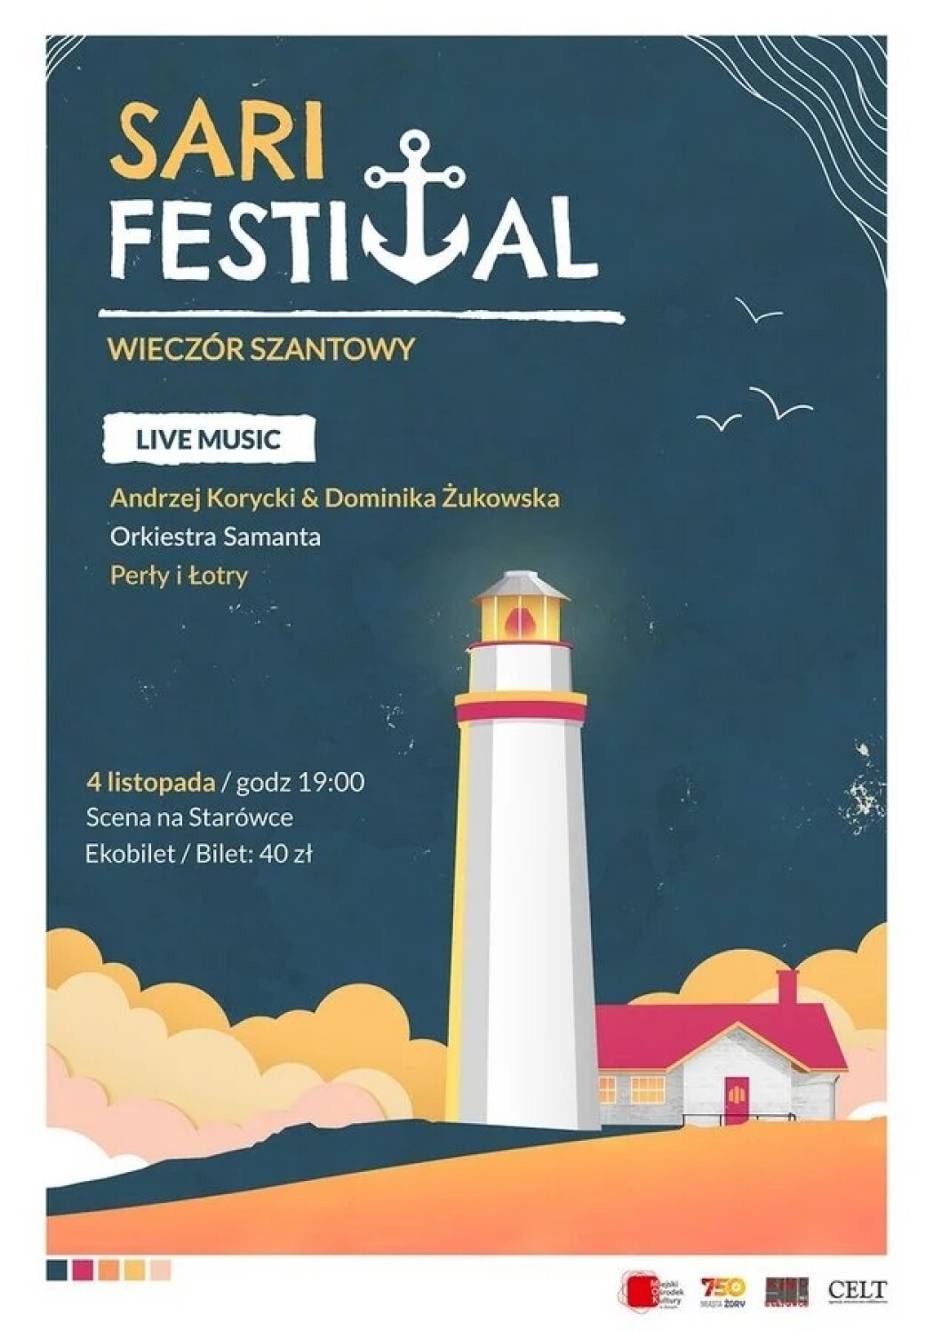 SARI Festival - Wieczór Szantowy już 4 listopada w Żorach